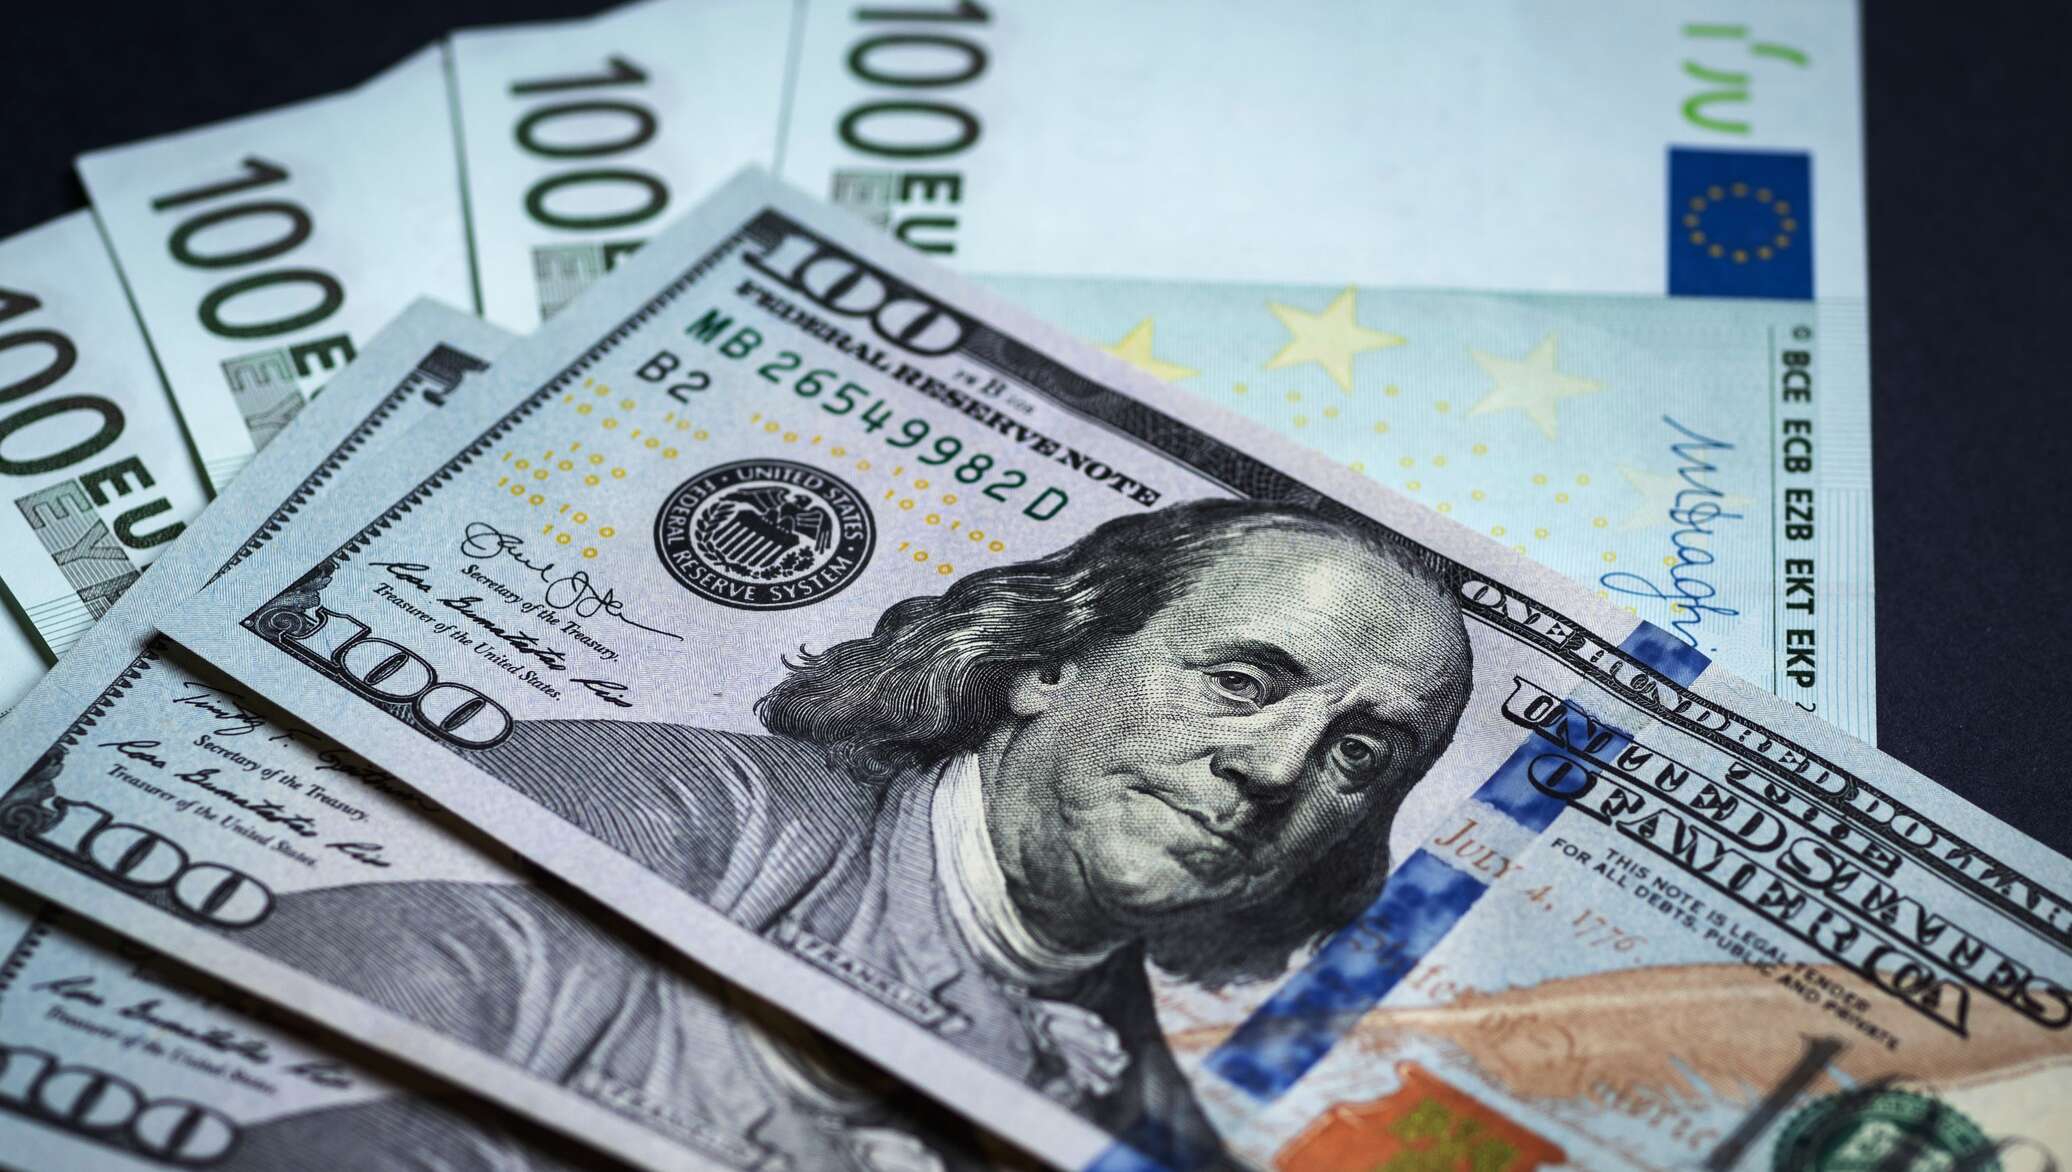 Евро доллары песня. Иностранная валюта. Доллар (валюта). Купюры евро и доллара. Доллар фото.